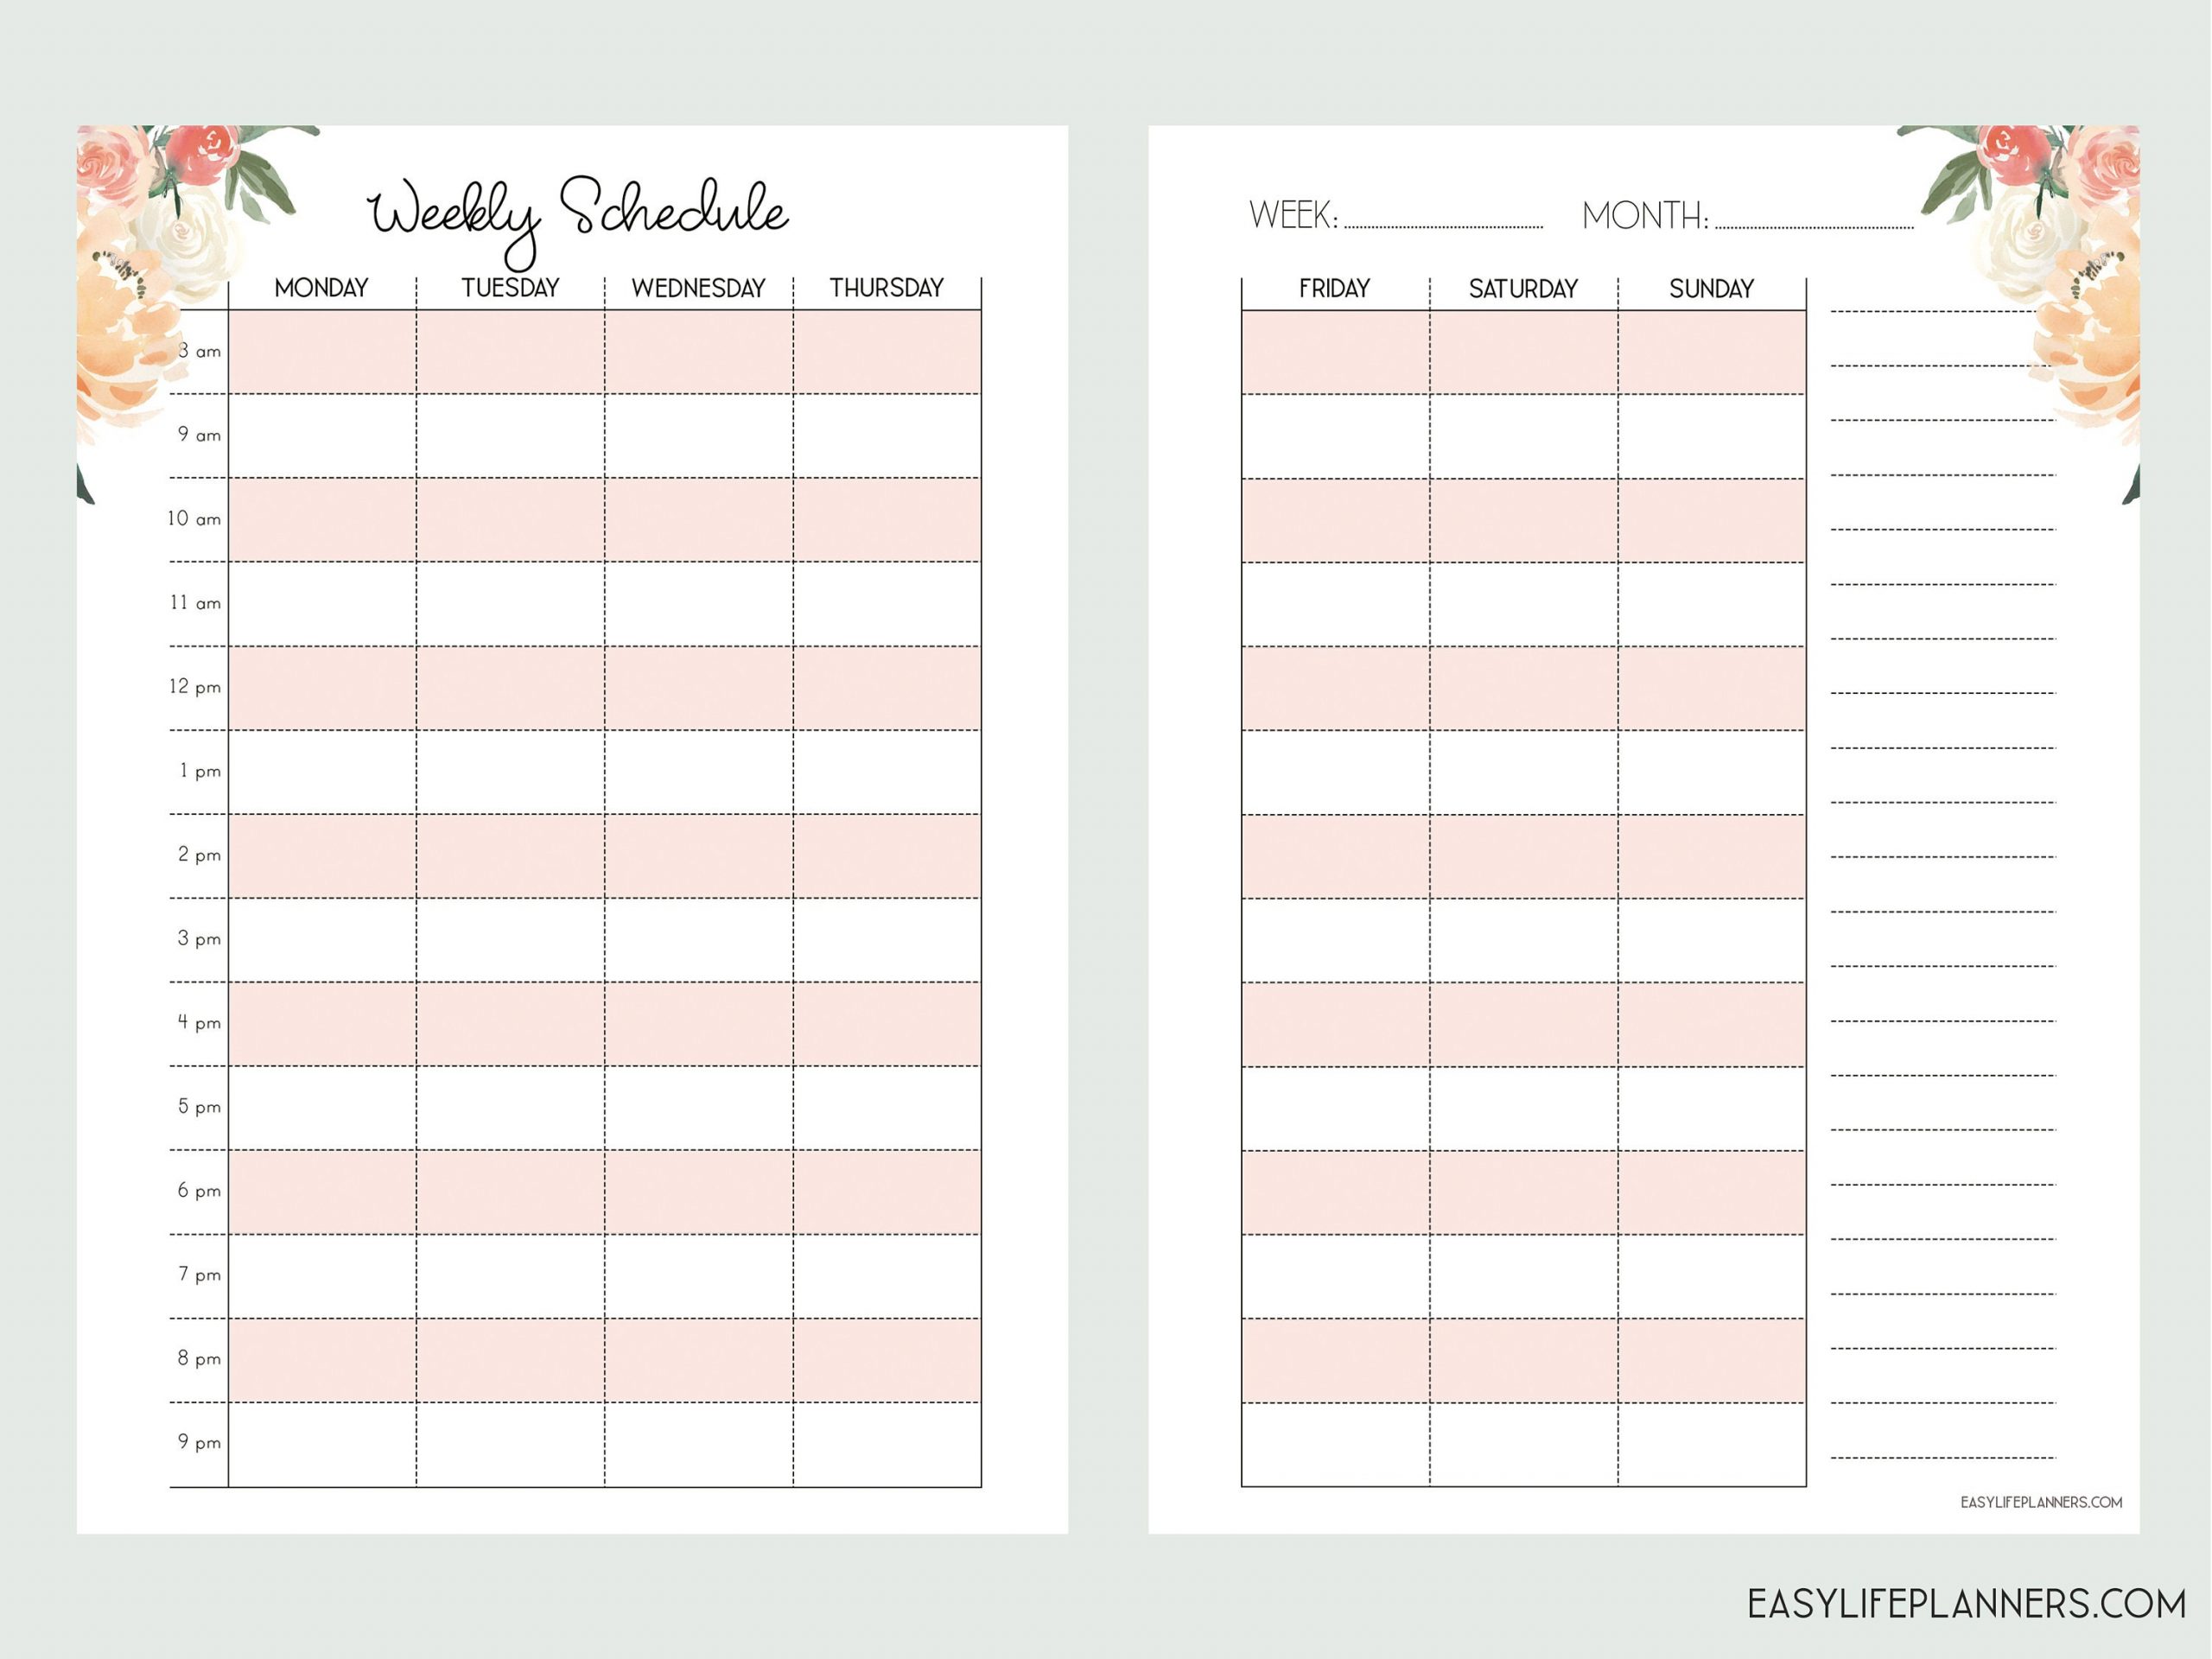 Weekly Hourly Planner Personal Wide Rings Weekly Schedule